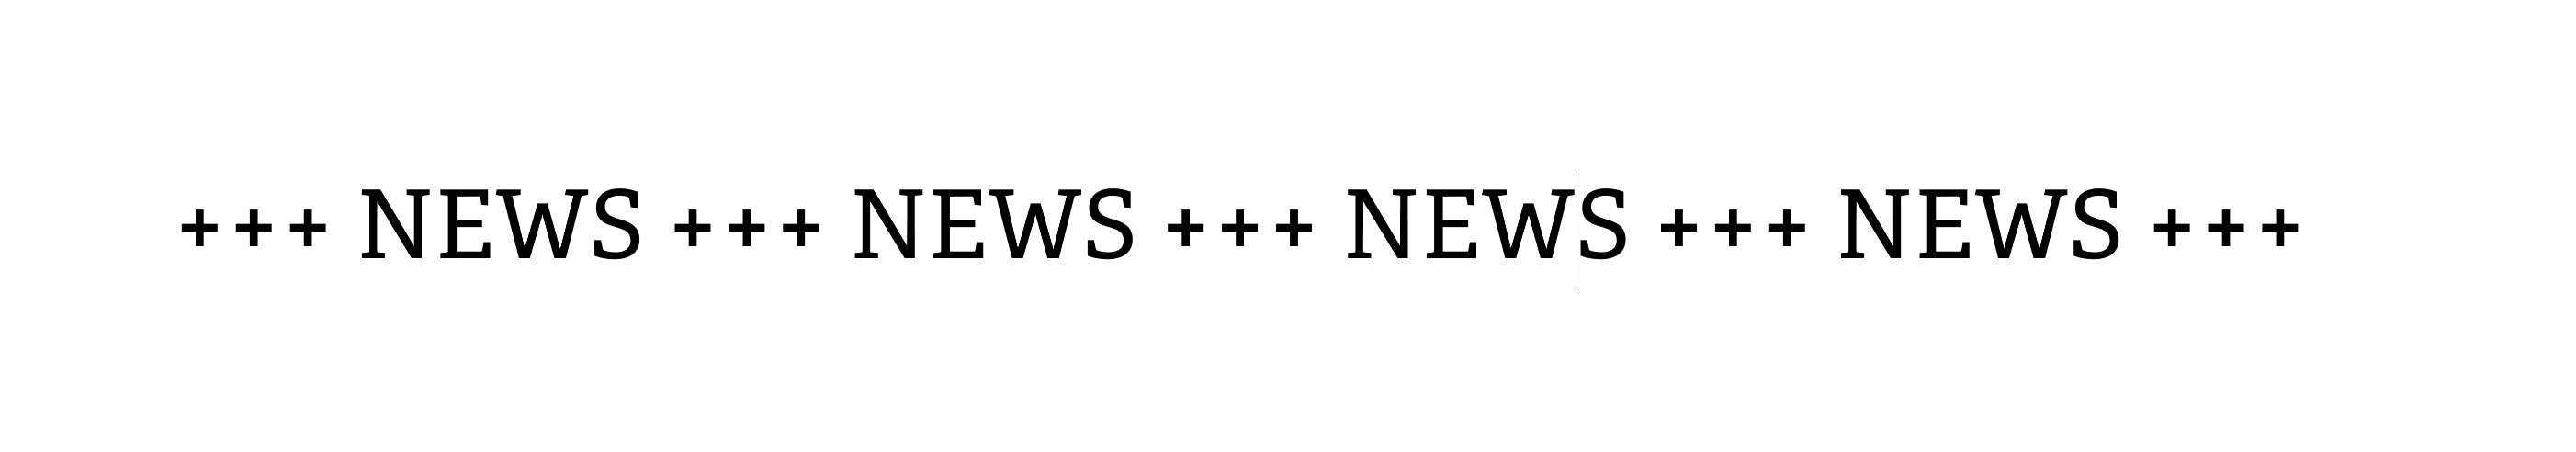 Schriftzug "news" wird im Stil eines Nachrichtentickers angezeigt.